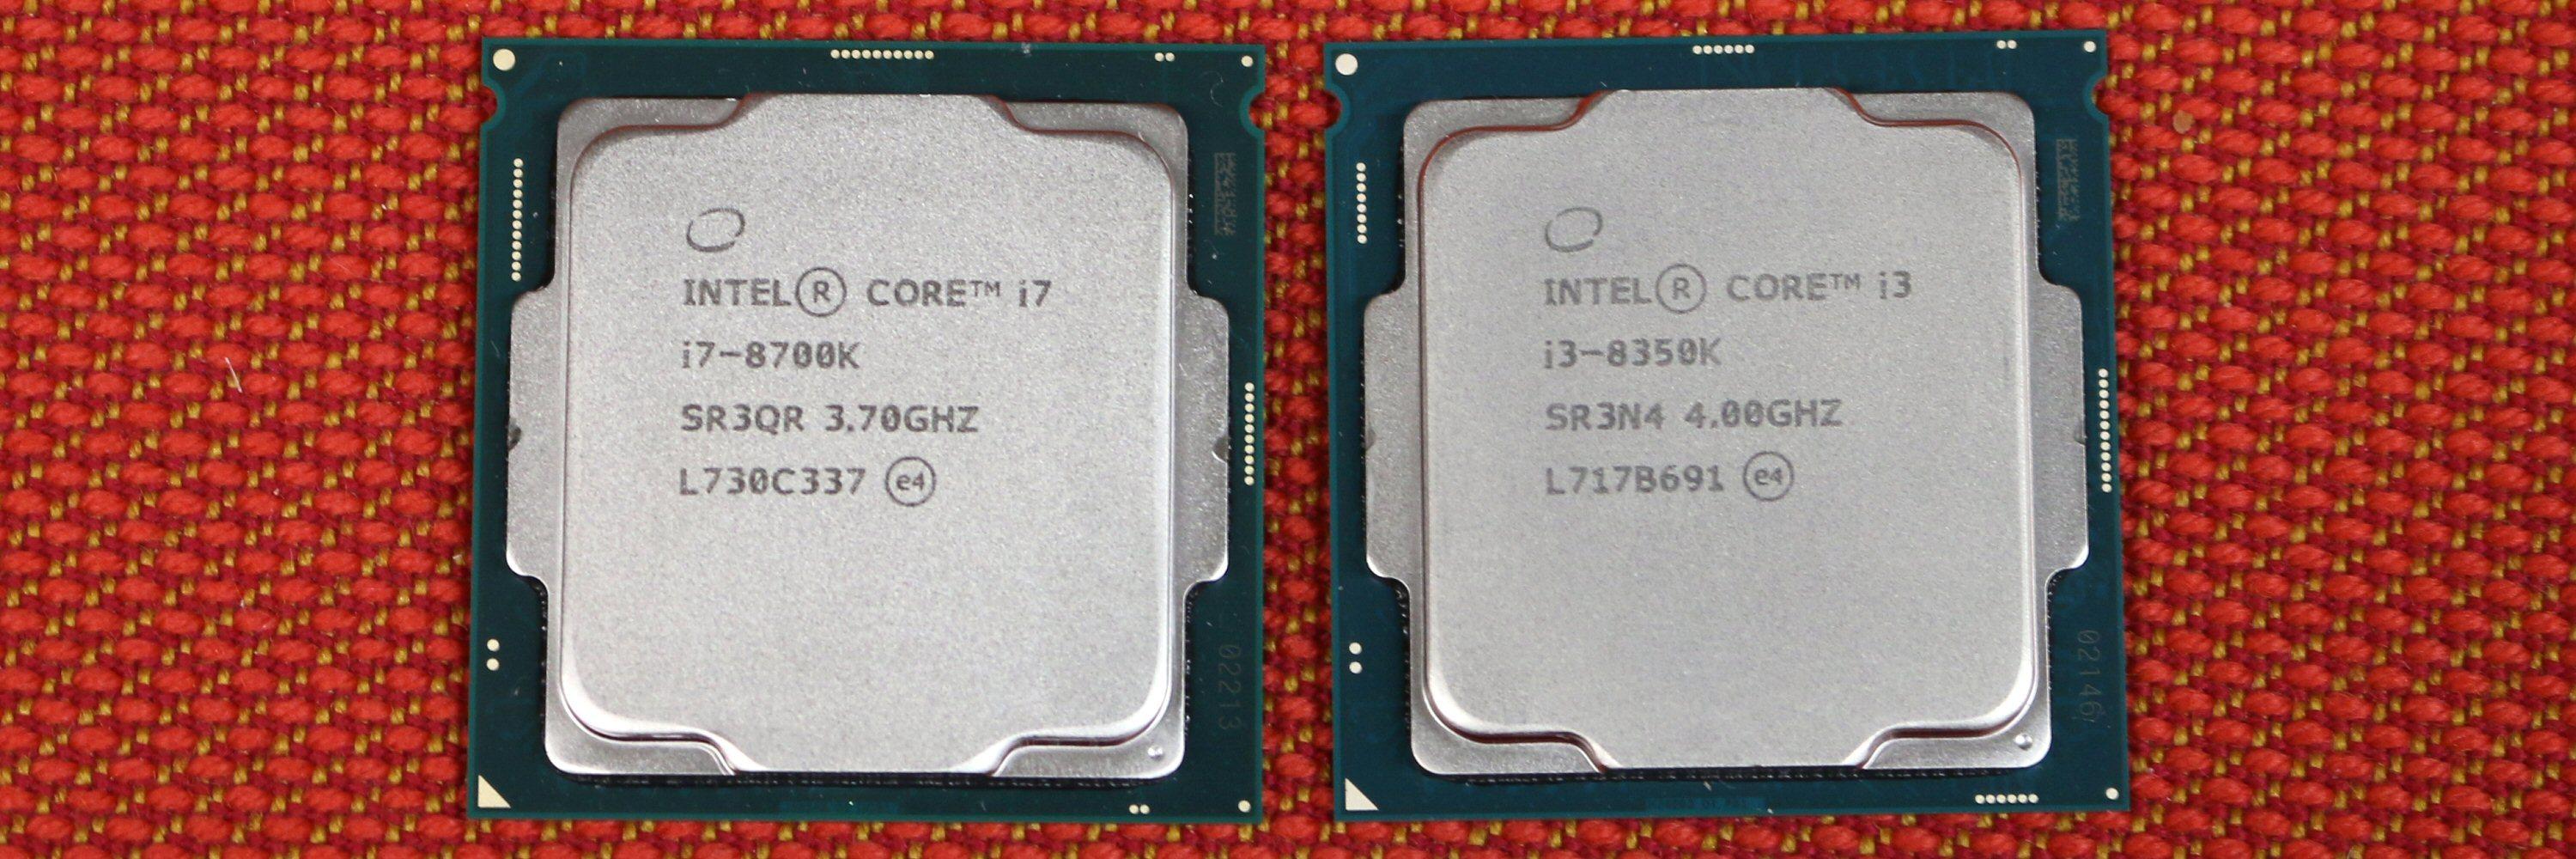 Intel Core i7-8700K og i3-8350K.